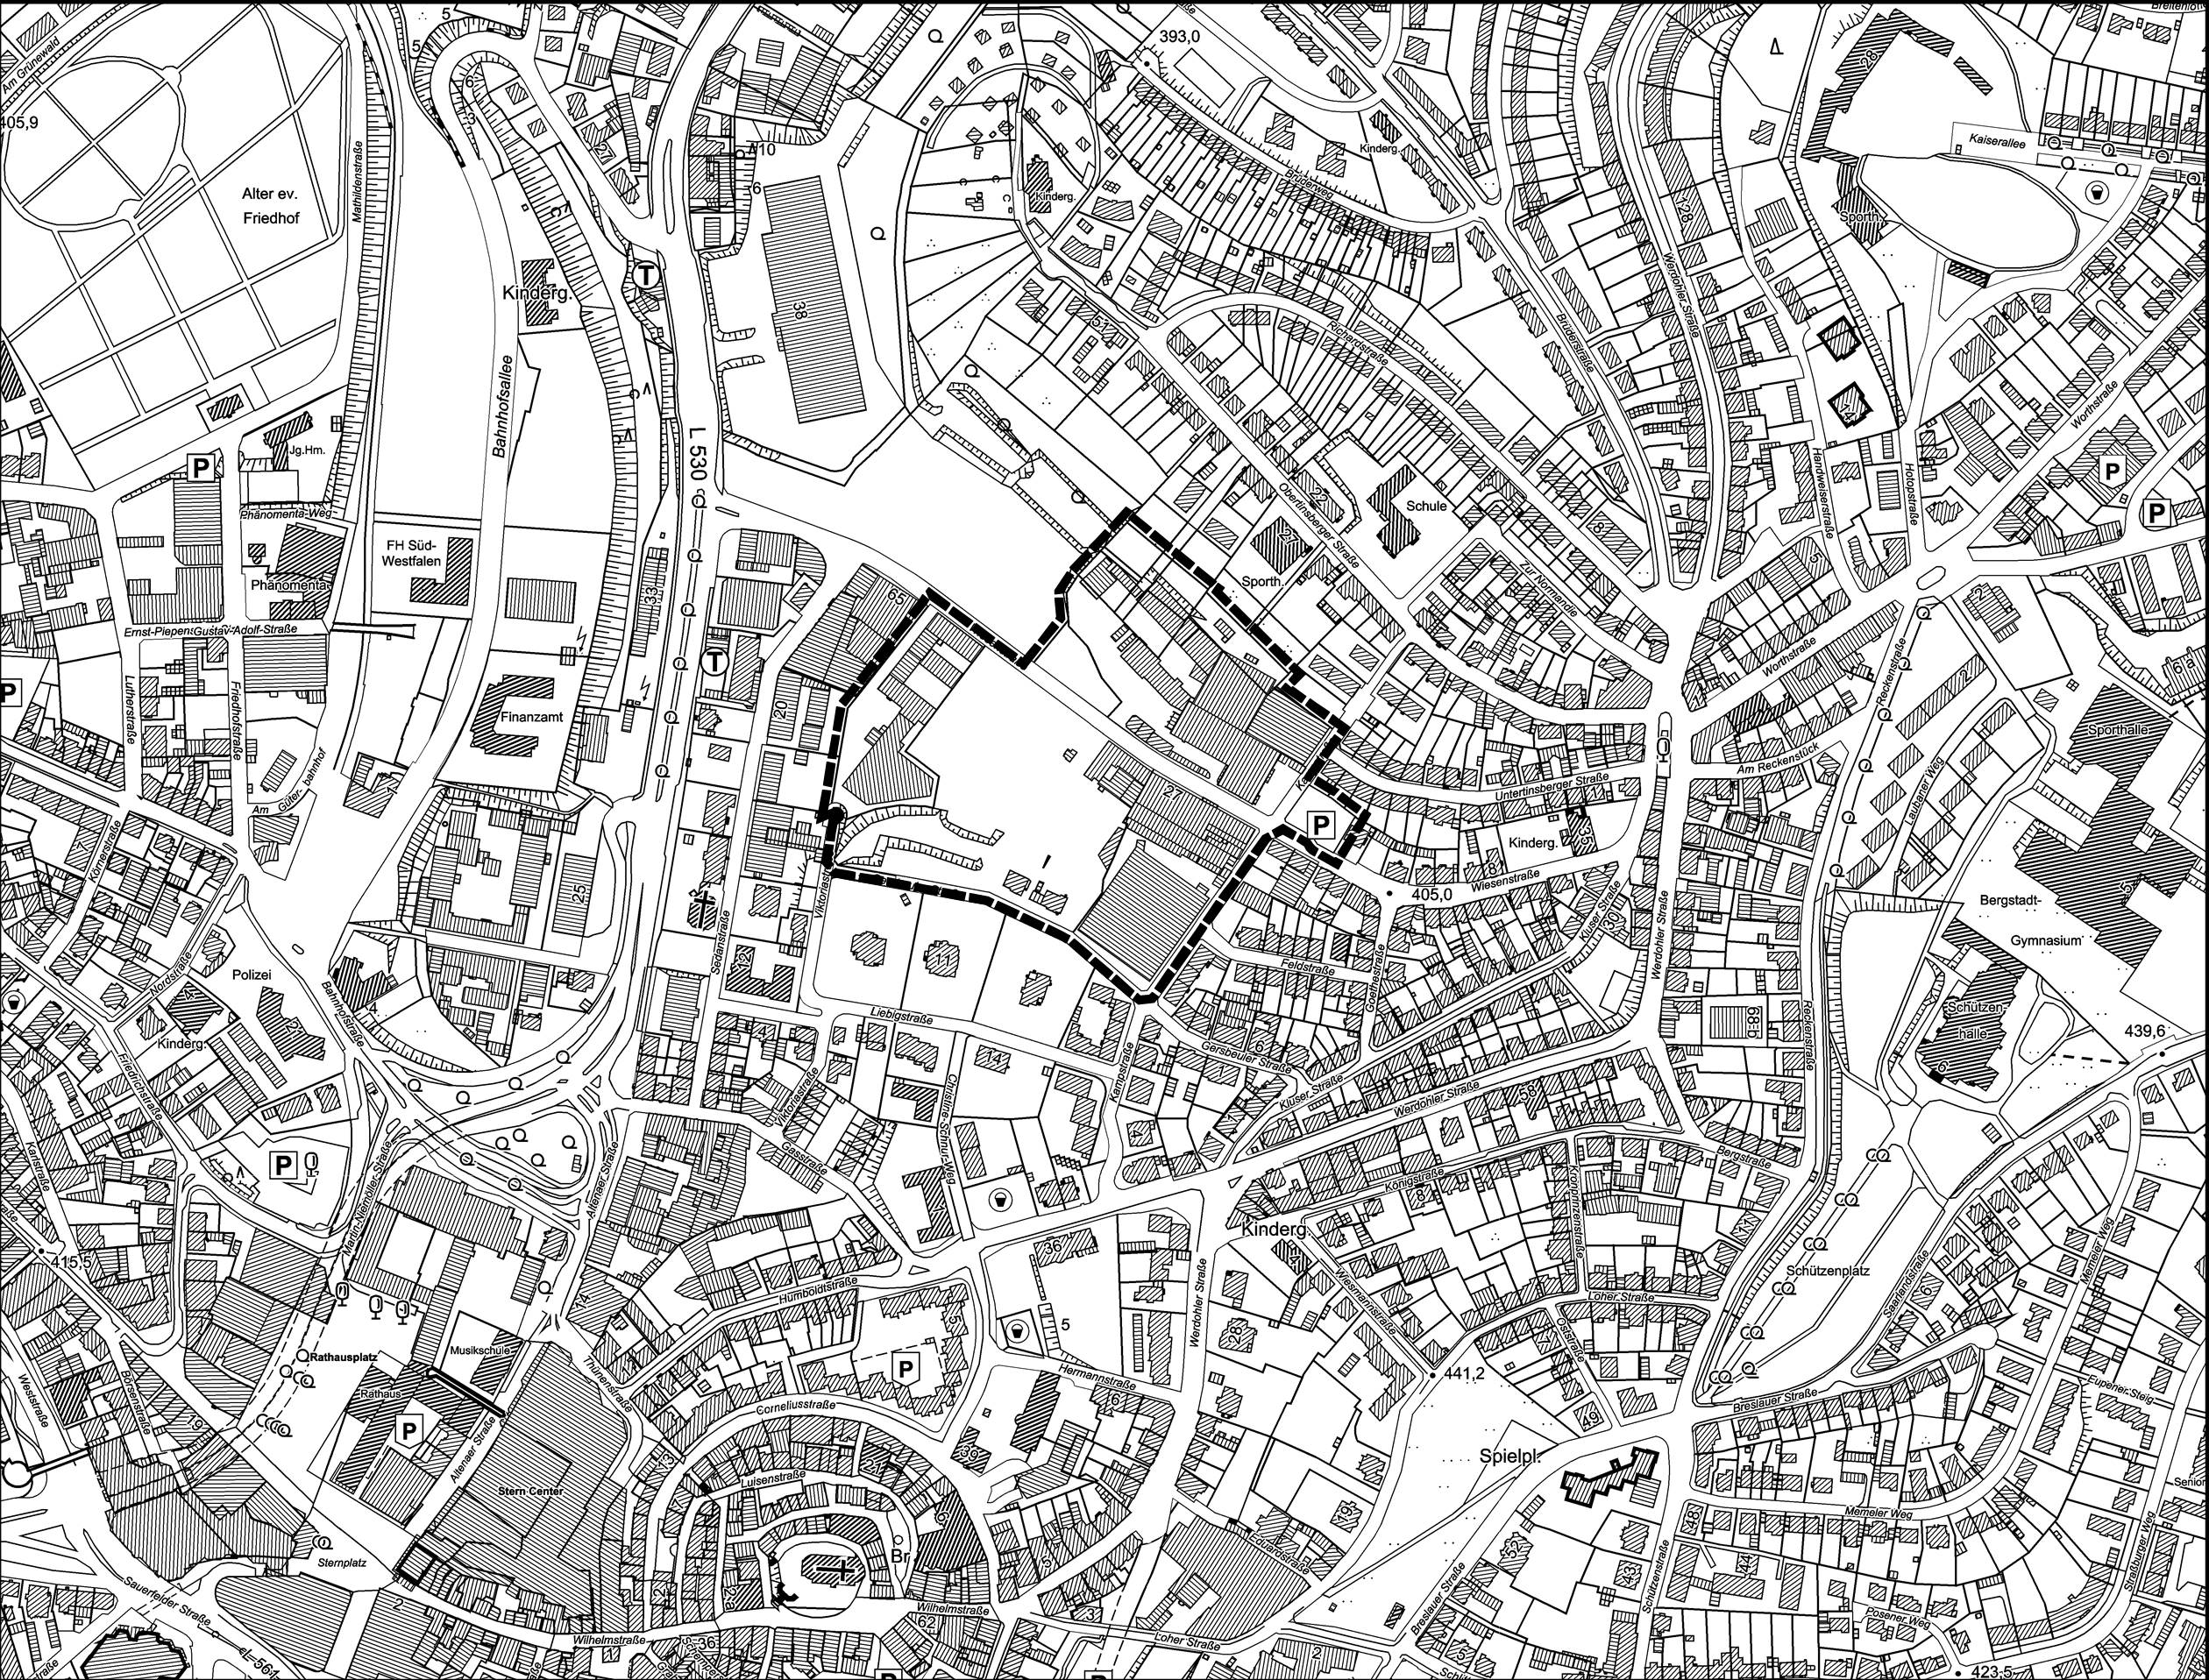 Übersichtsplan 19. Änderung des Flächennutzungsplanes im Bereich des Bebauungsplanes Nr. 843 "Wiesenstraße"